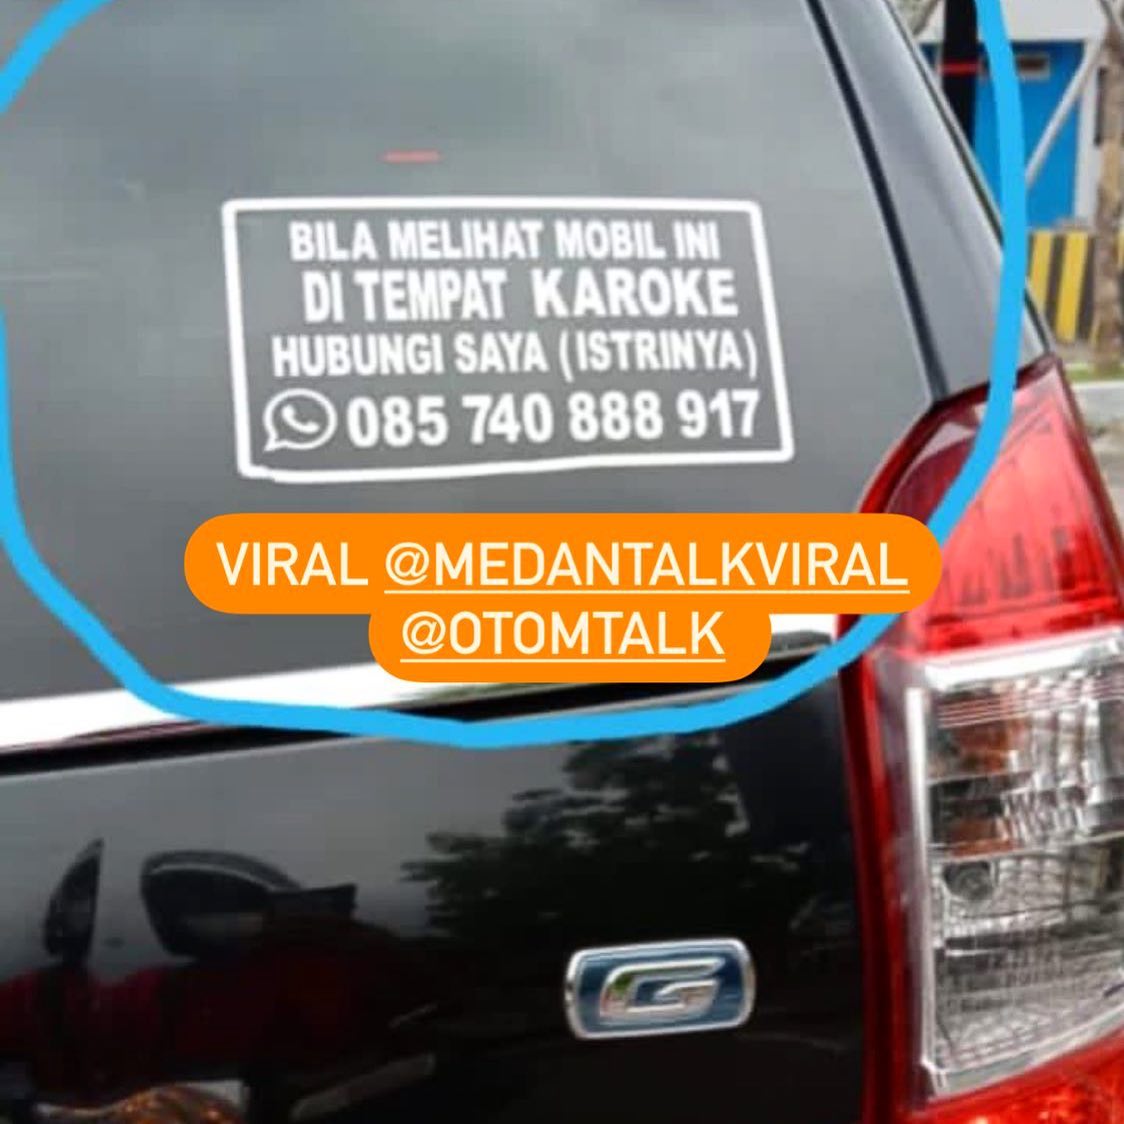 Jangan lupa perhatikan mobil ini

Viral @MedanTalkViral 
Tips Otomotif lainnya follow @otomtalk